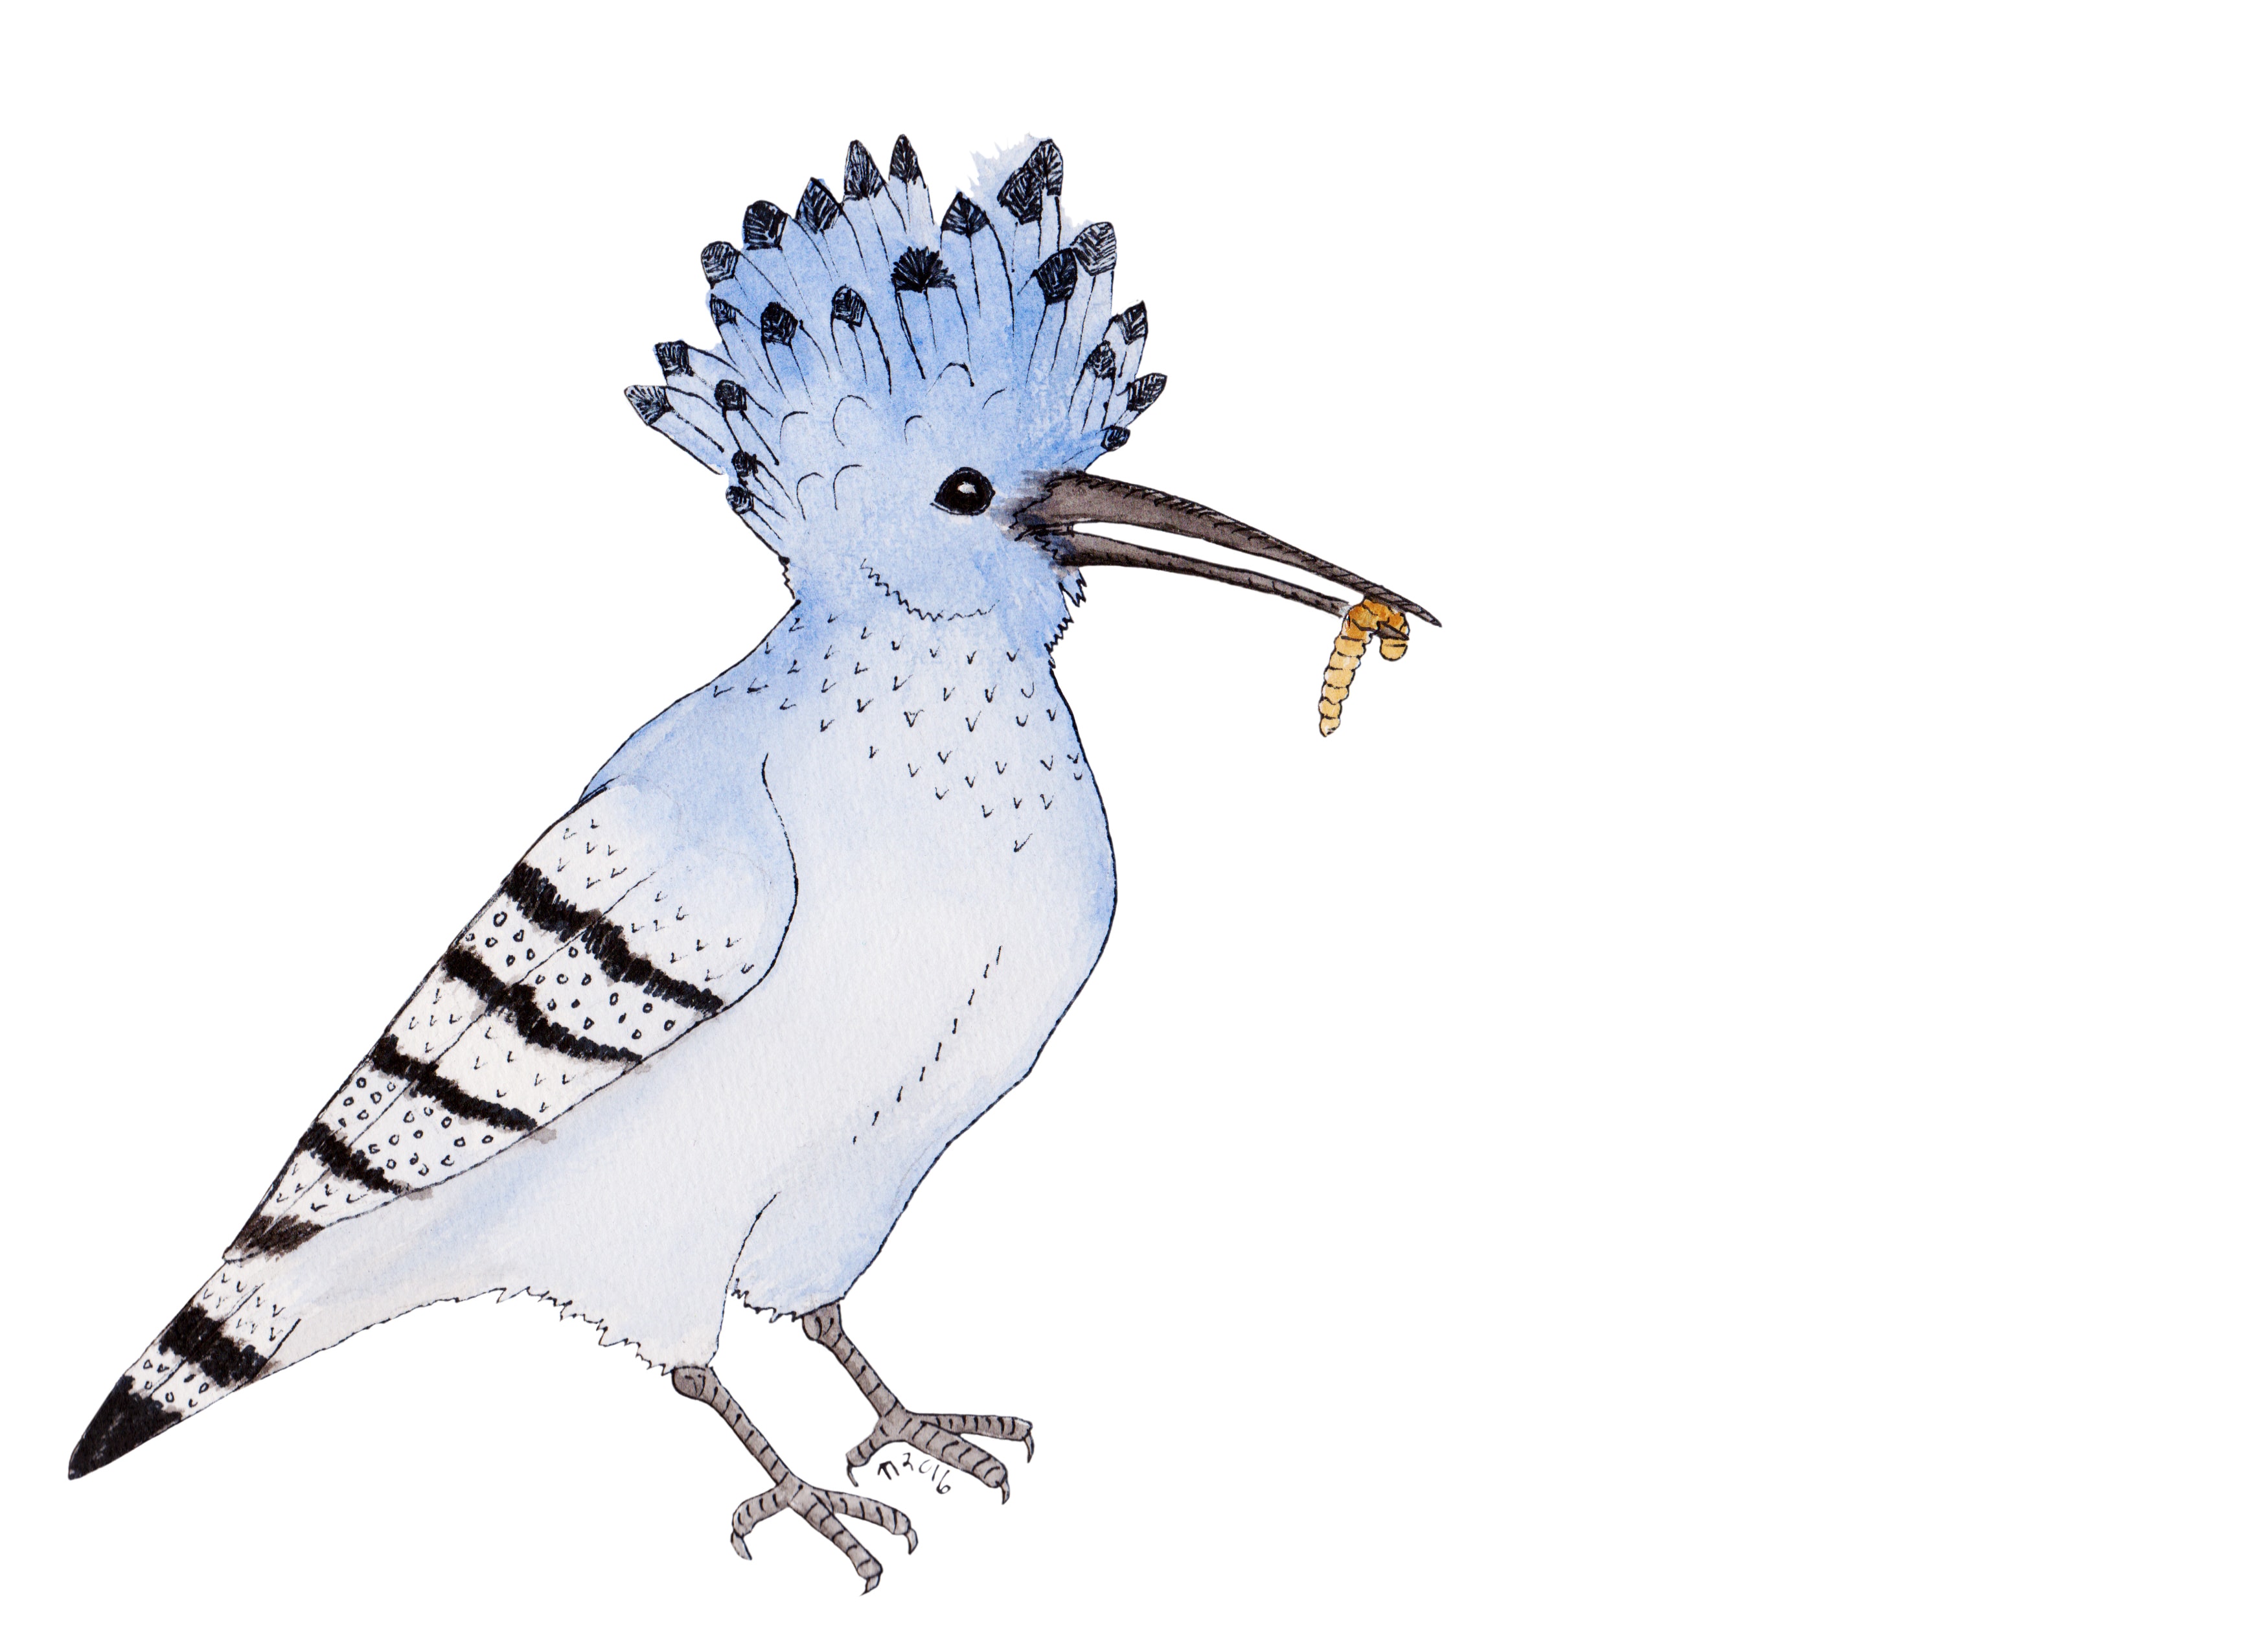 Strange Birds - 12 - Sulten Blå Hærfugl av Linda Ursin